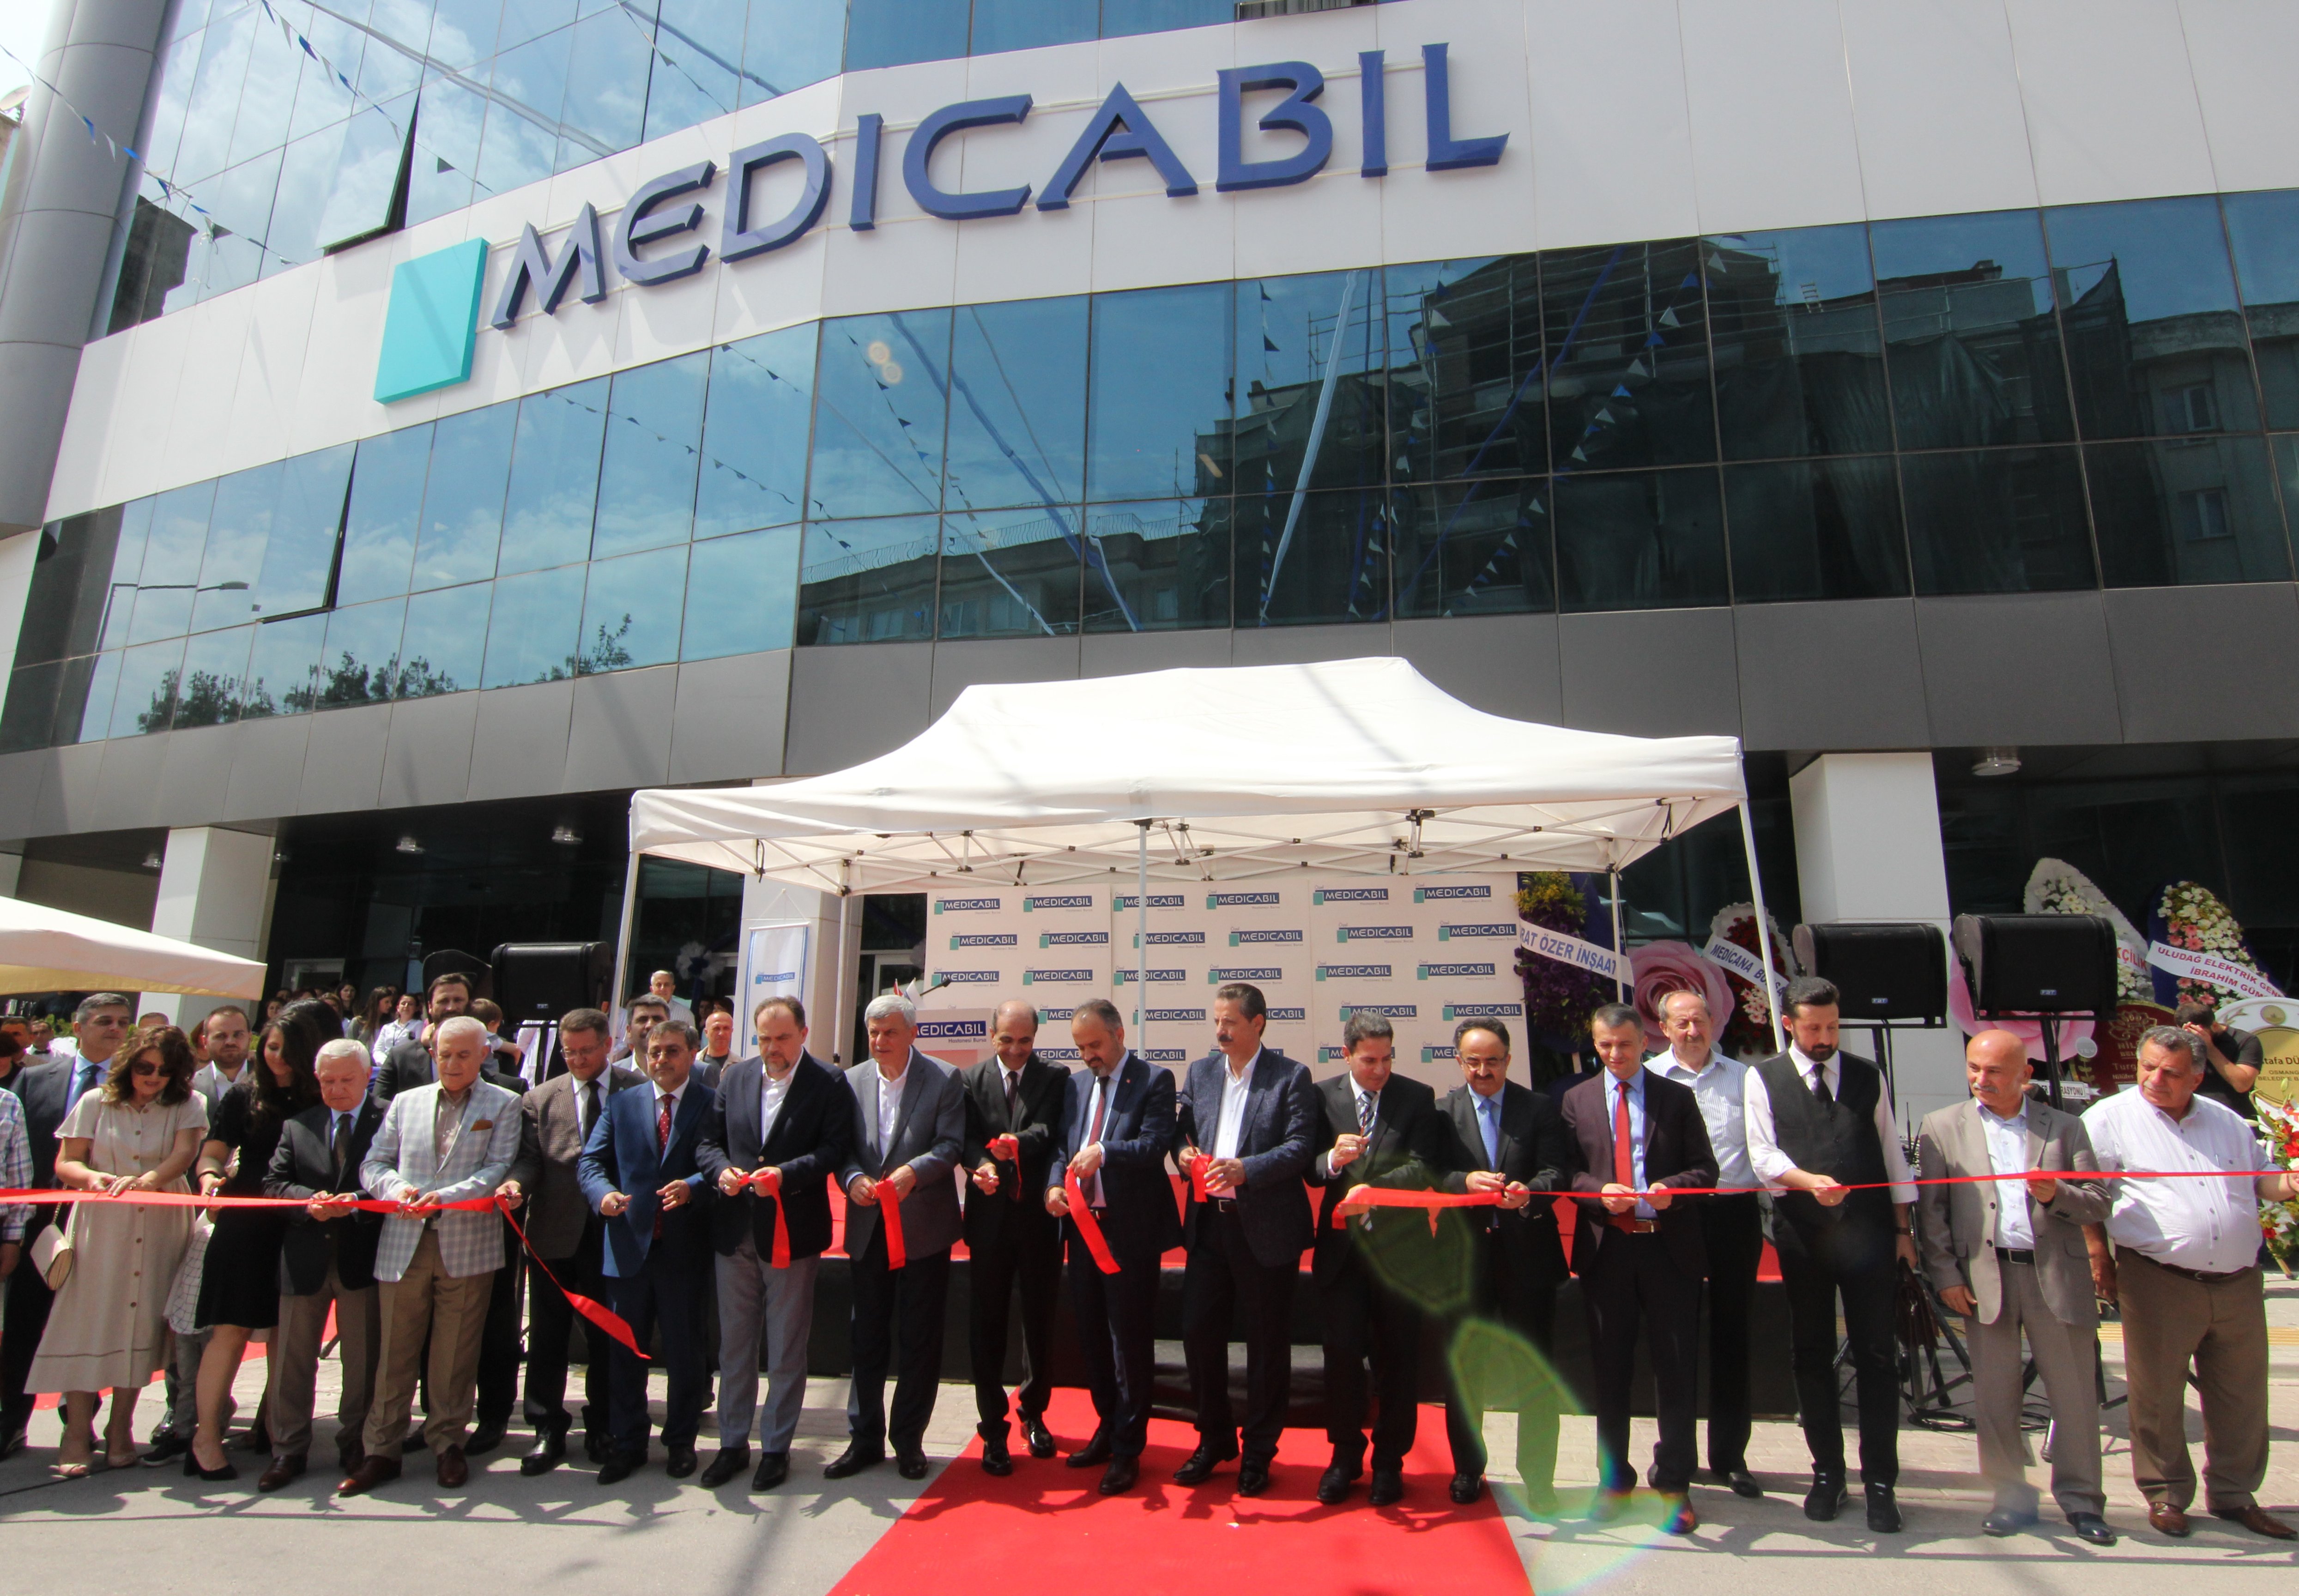 Özel Medicabil Hastanesi Yeni Hizmet Binası Açıldı